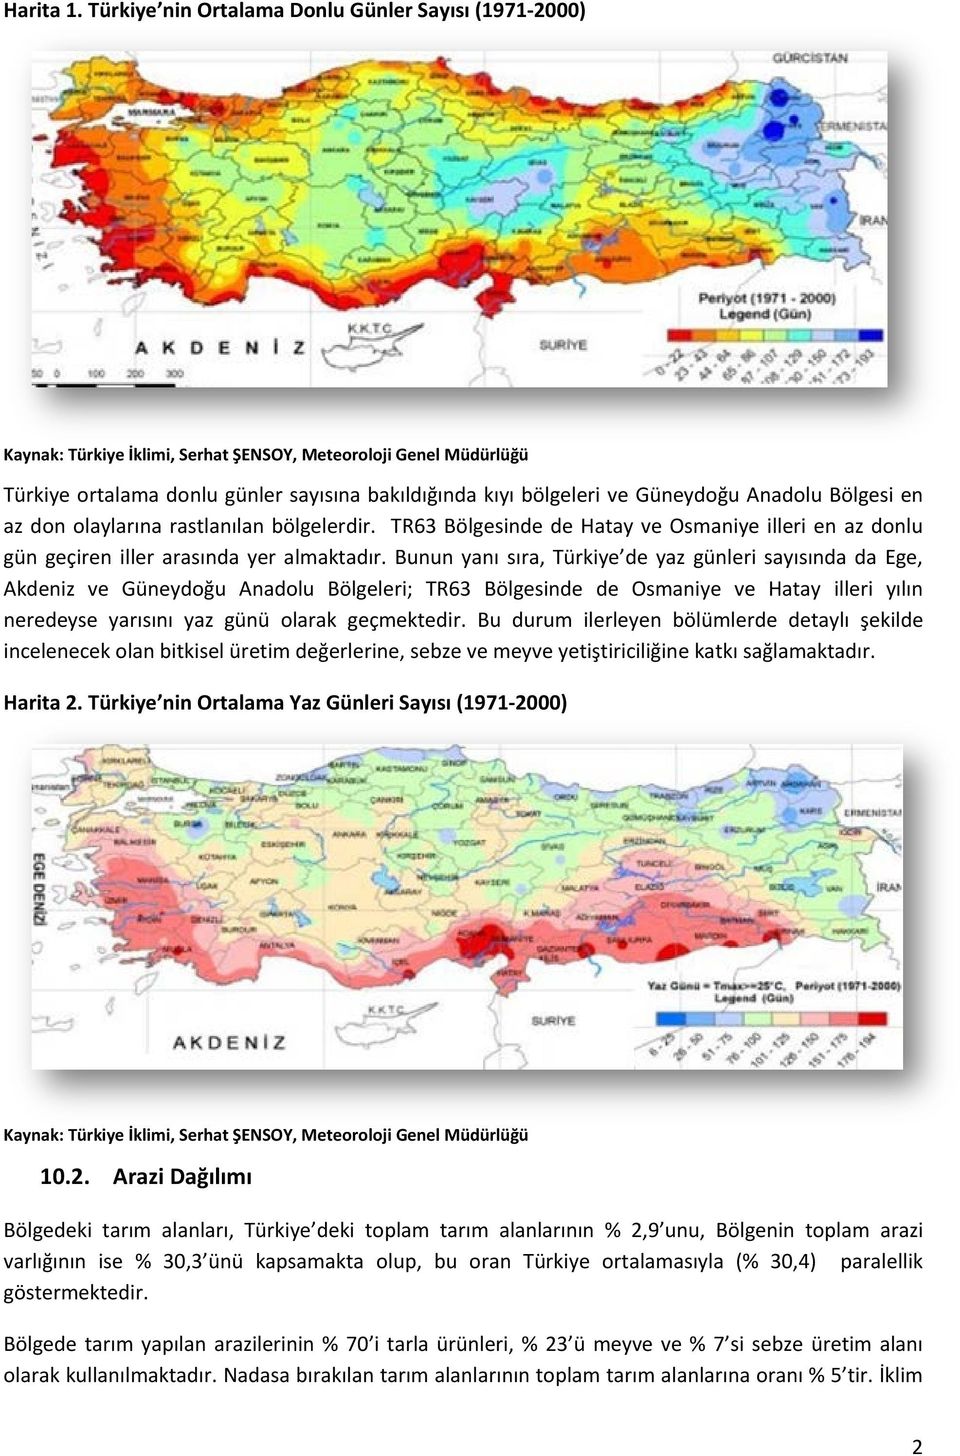 Anadolu Bölgesi en az don olaylarına rastlanılan bölgelerdir. TR63 Bölgesinde de Hatay ve Osmaniye illeri en az donlu gün geçiren iller arasında yer almaktadır.